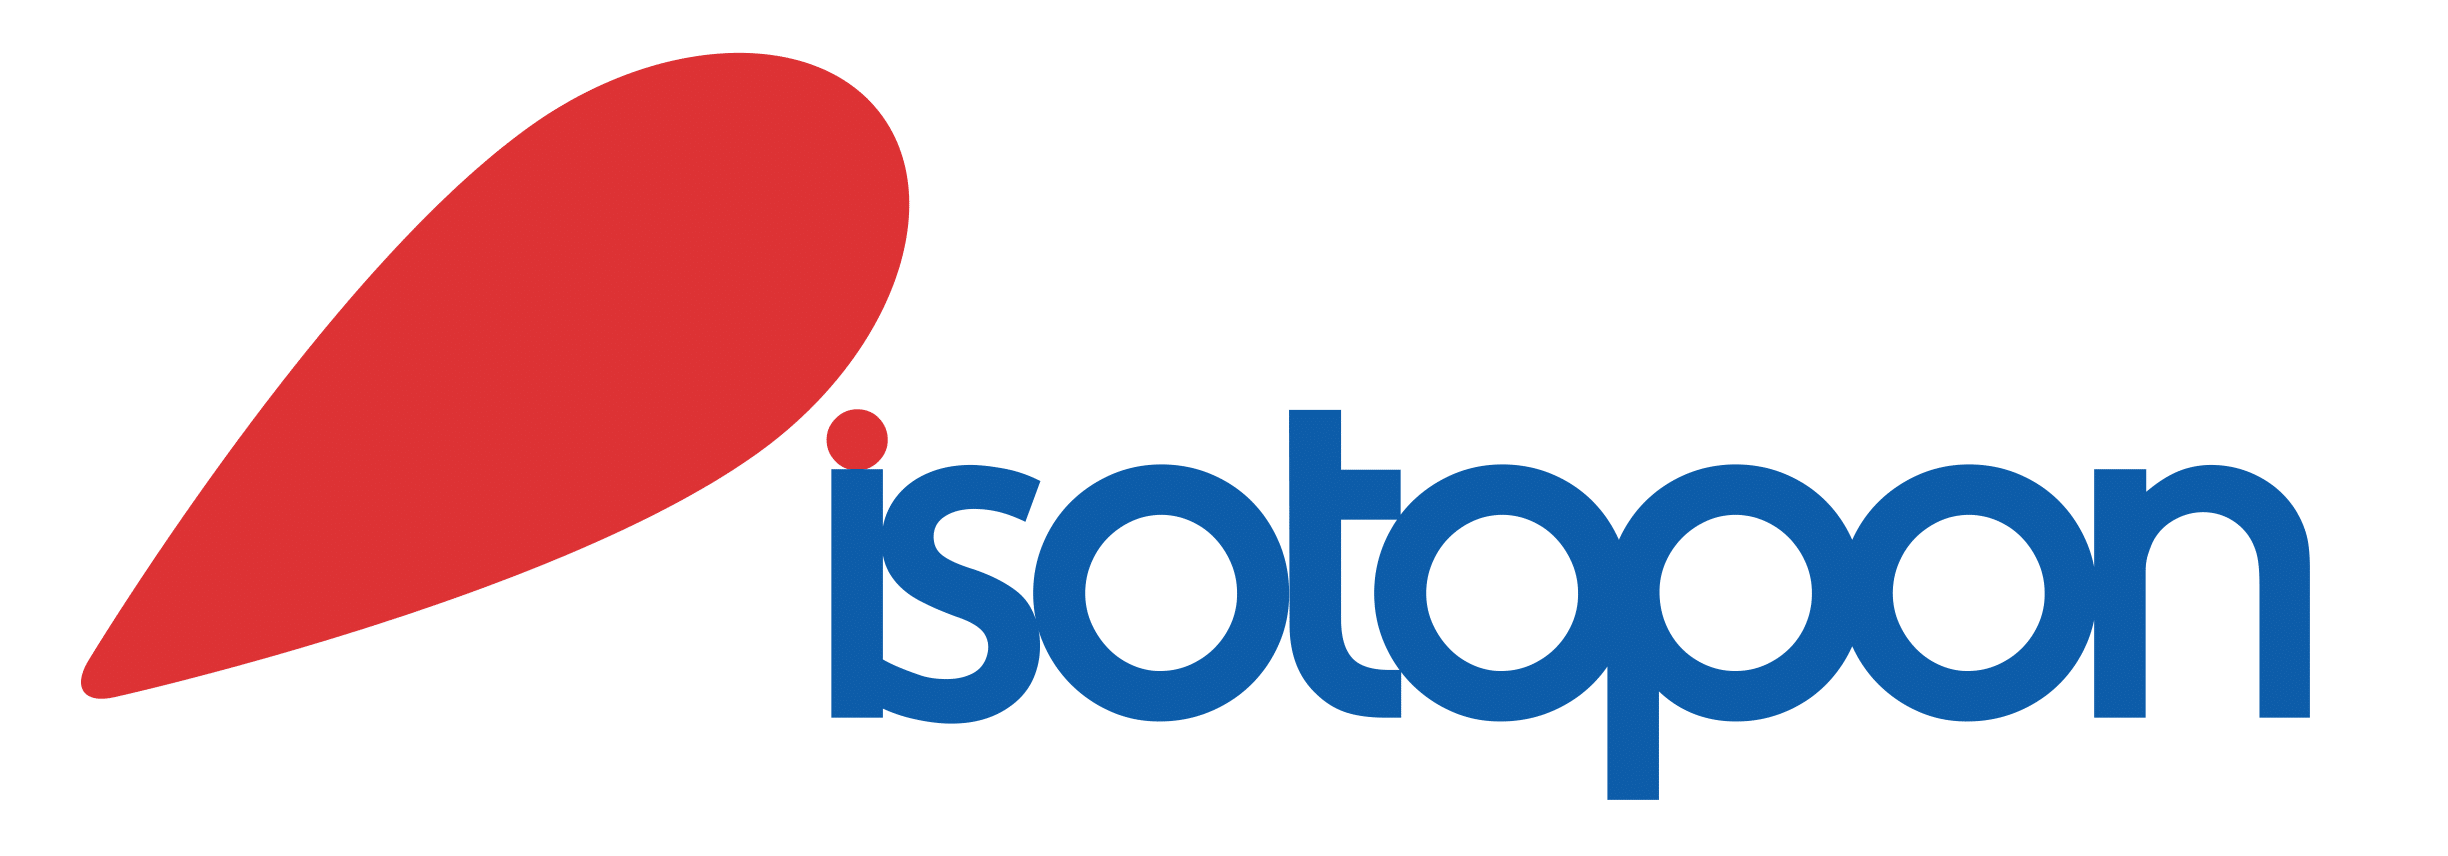 Isotopon